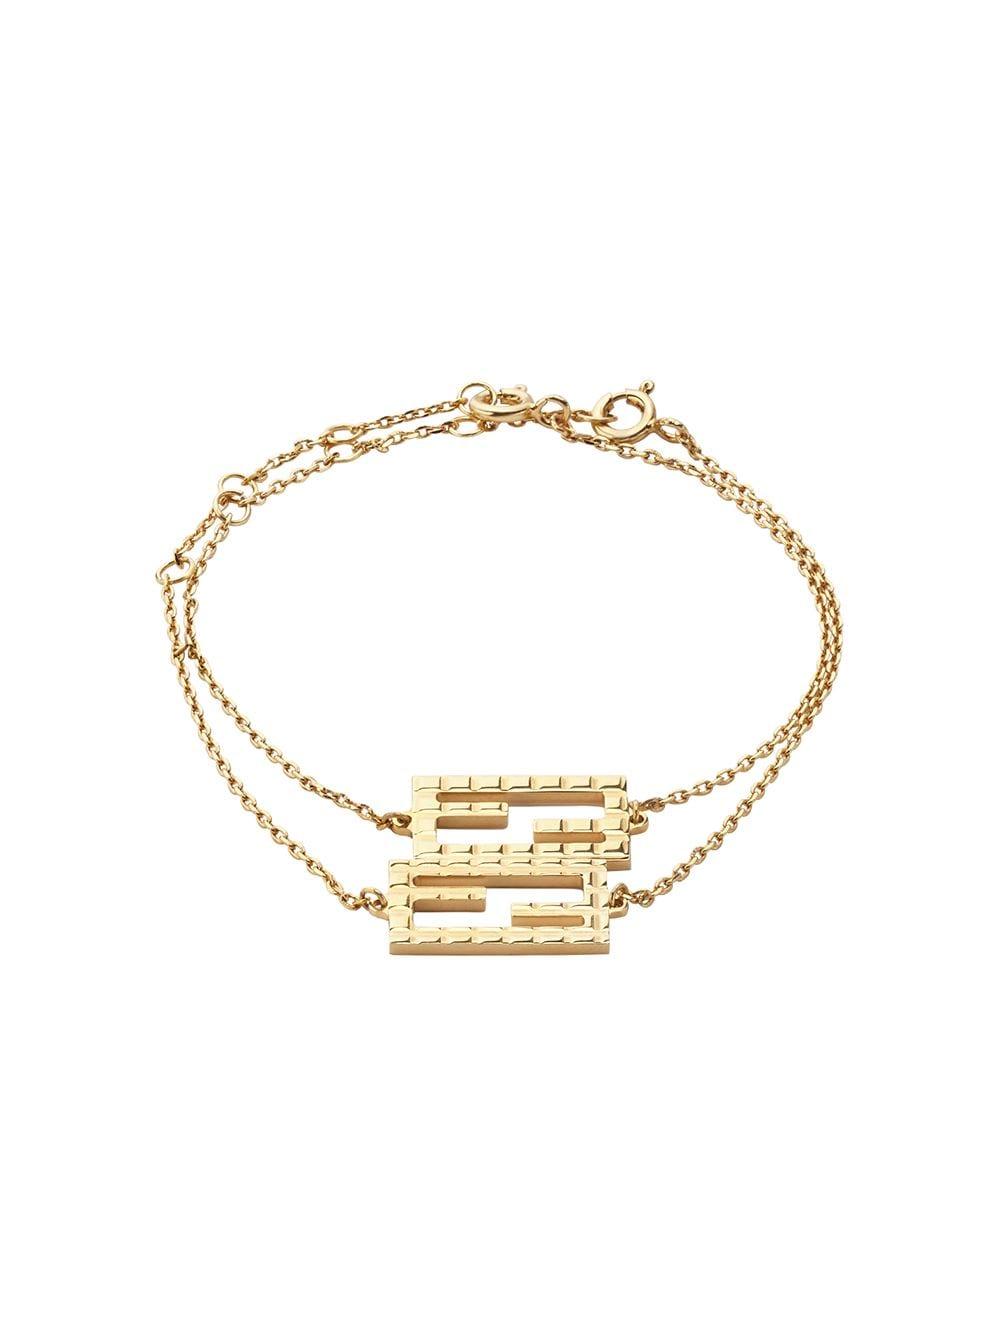 Fendi Ff Friendship Bracelets in Gold (Metallic) - Lyst